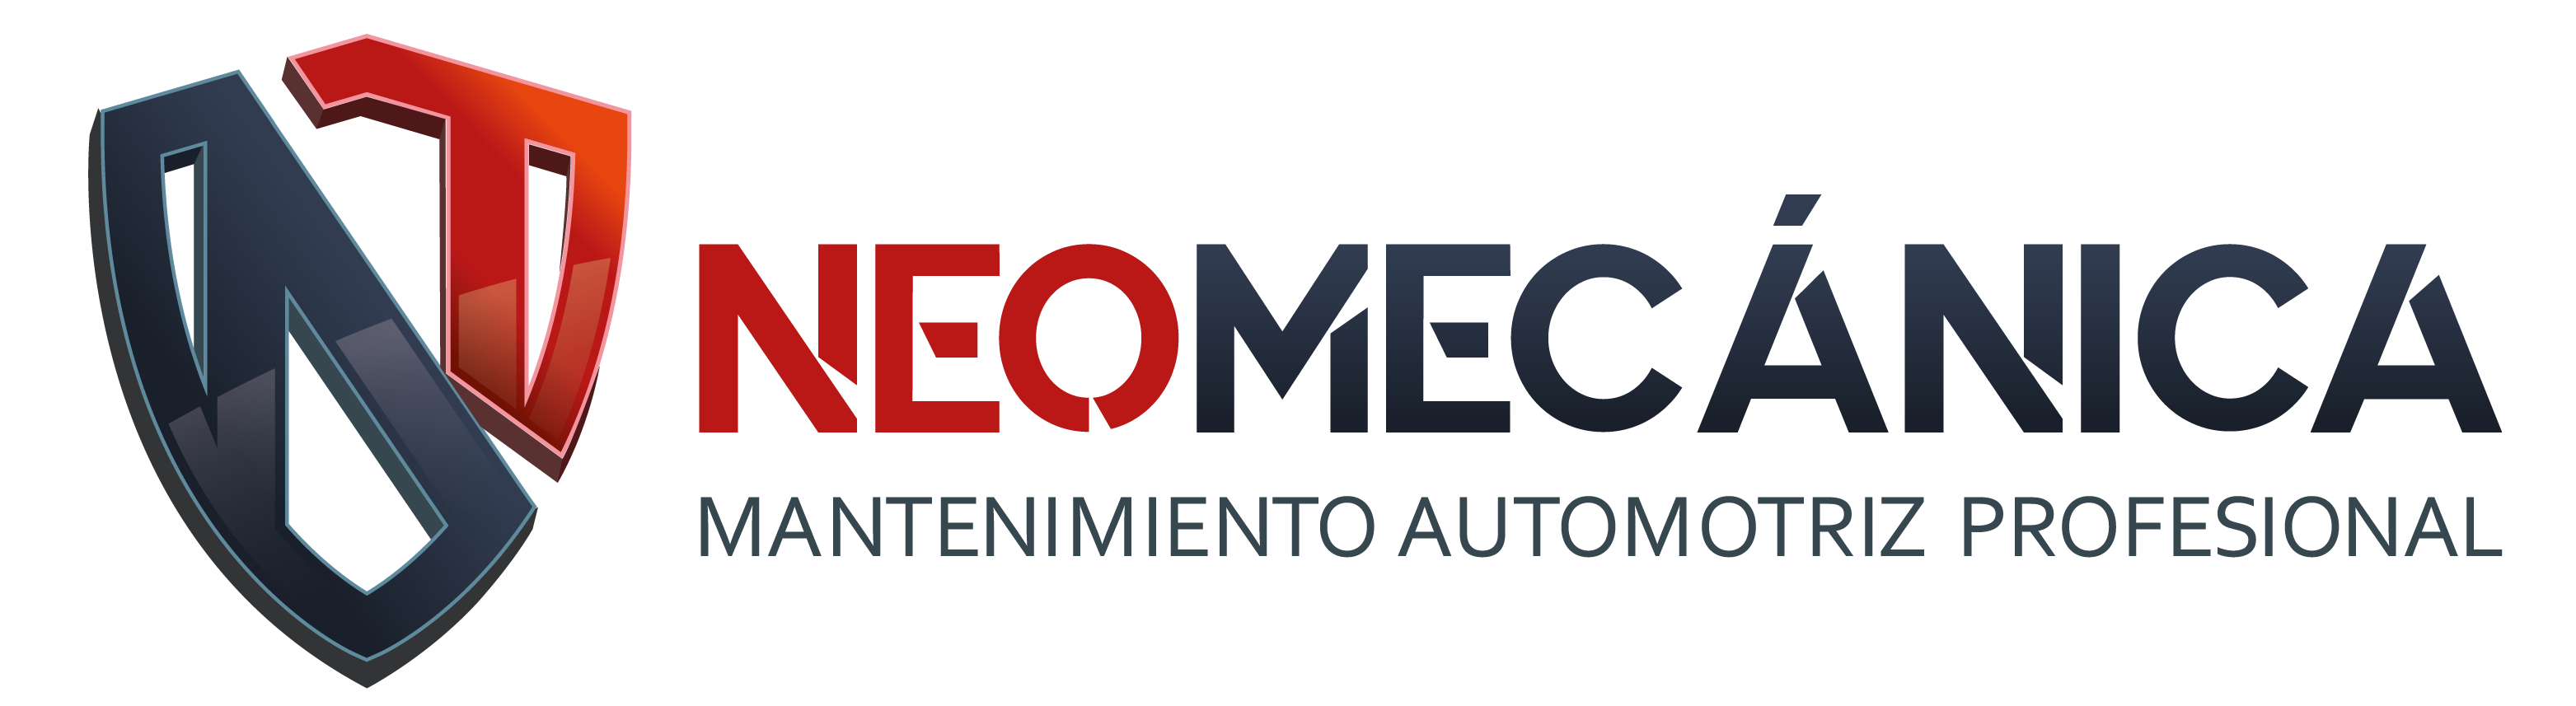 Logo-neomecanica-02-1.png